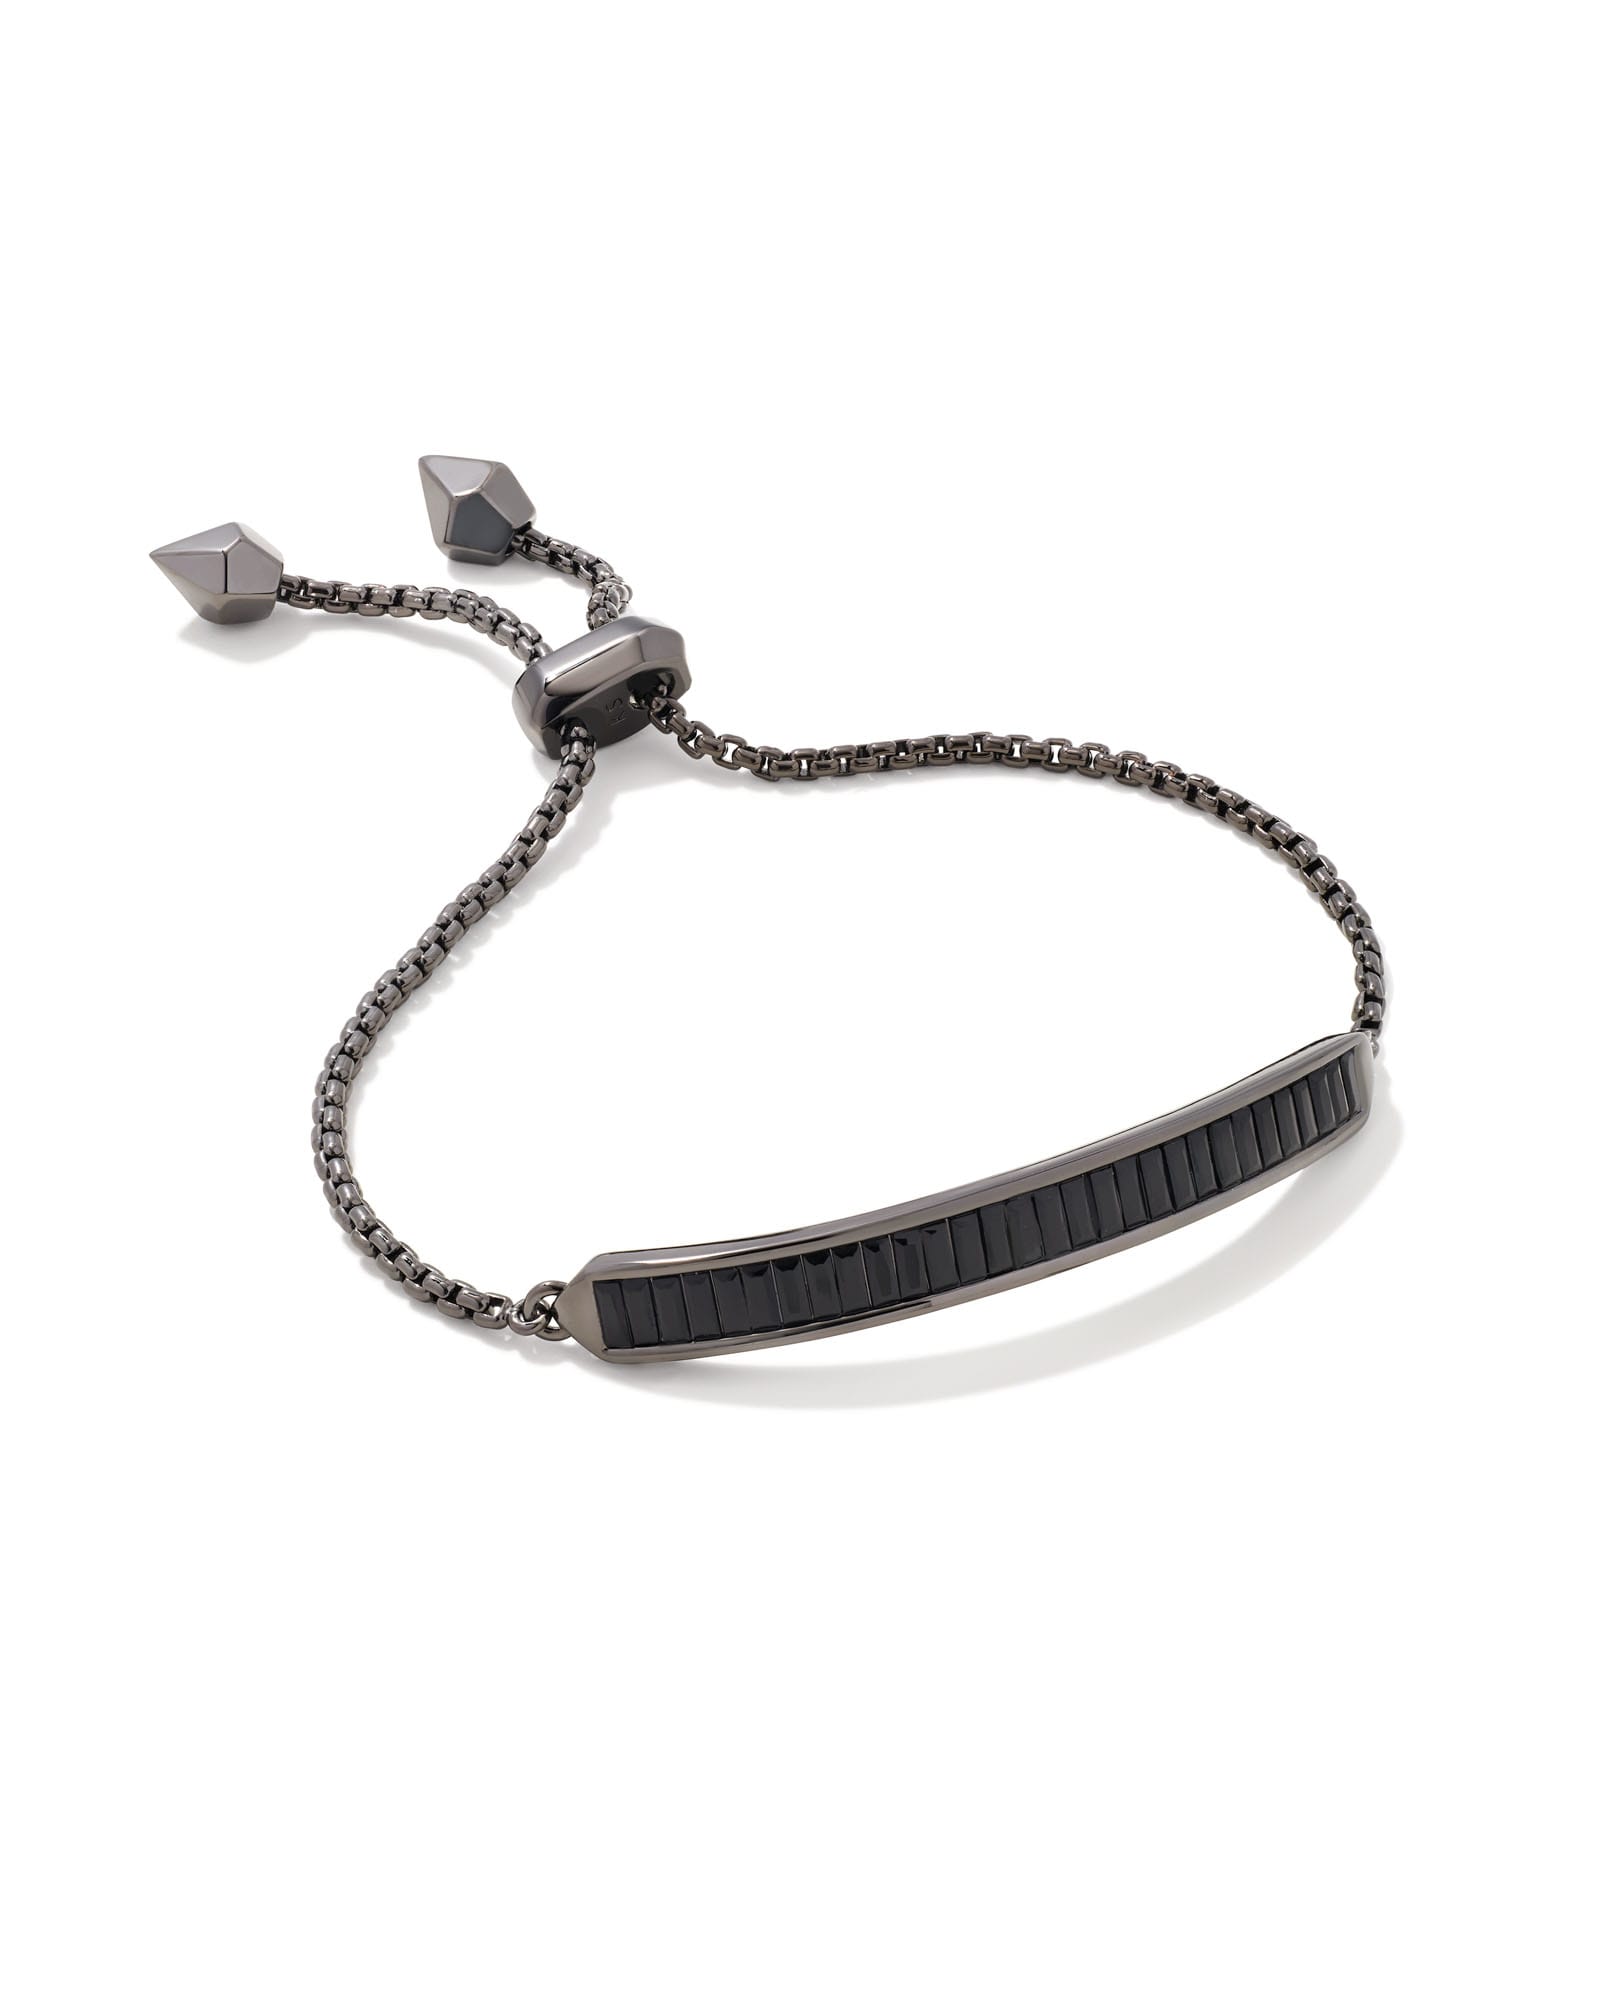 Jack Gunmetal Adjustable Chain Bracelet in Black Spinel